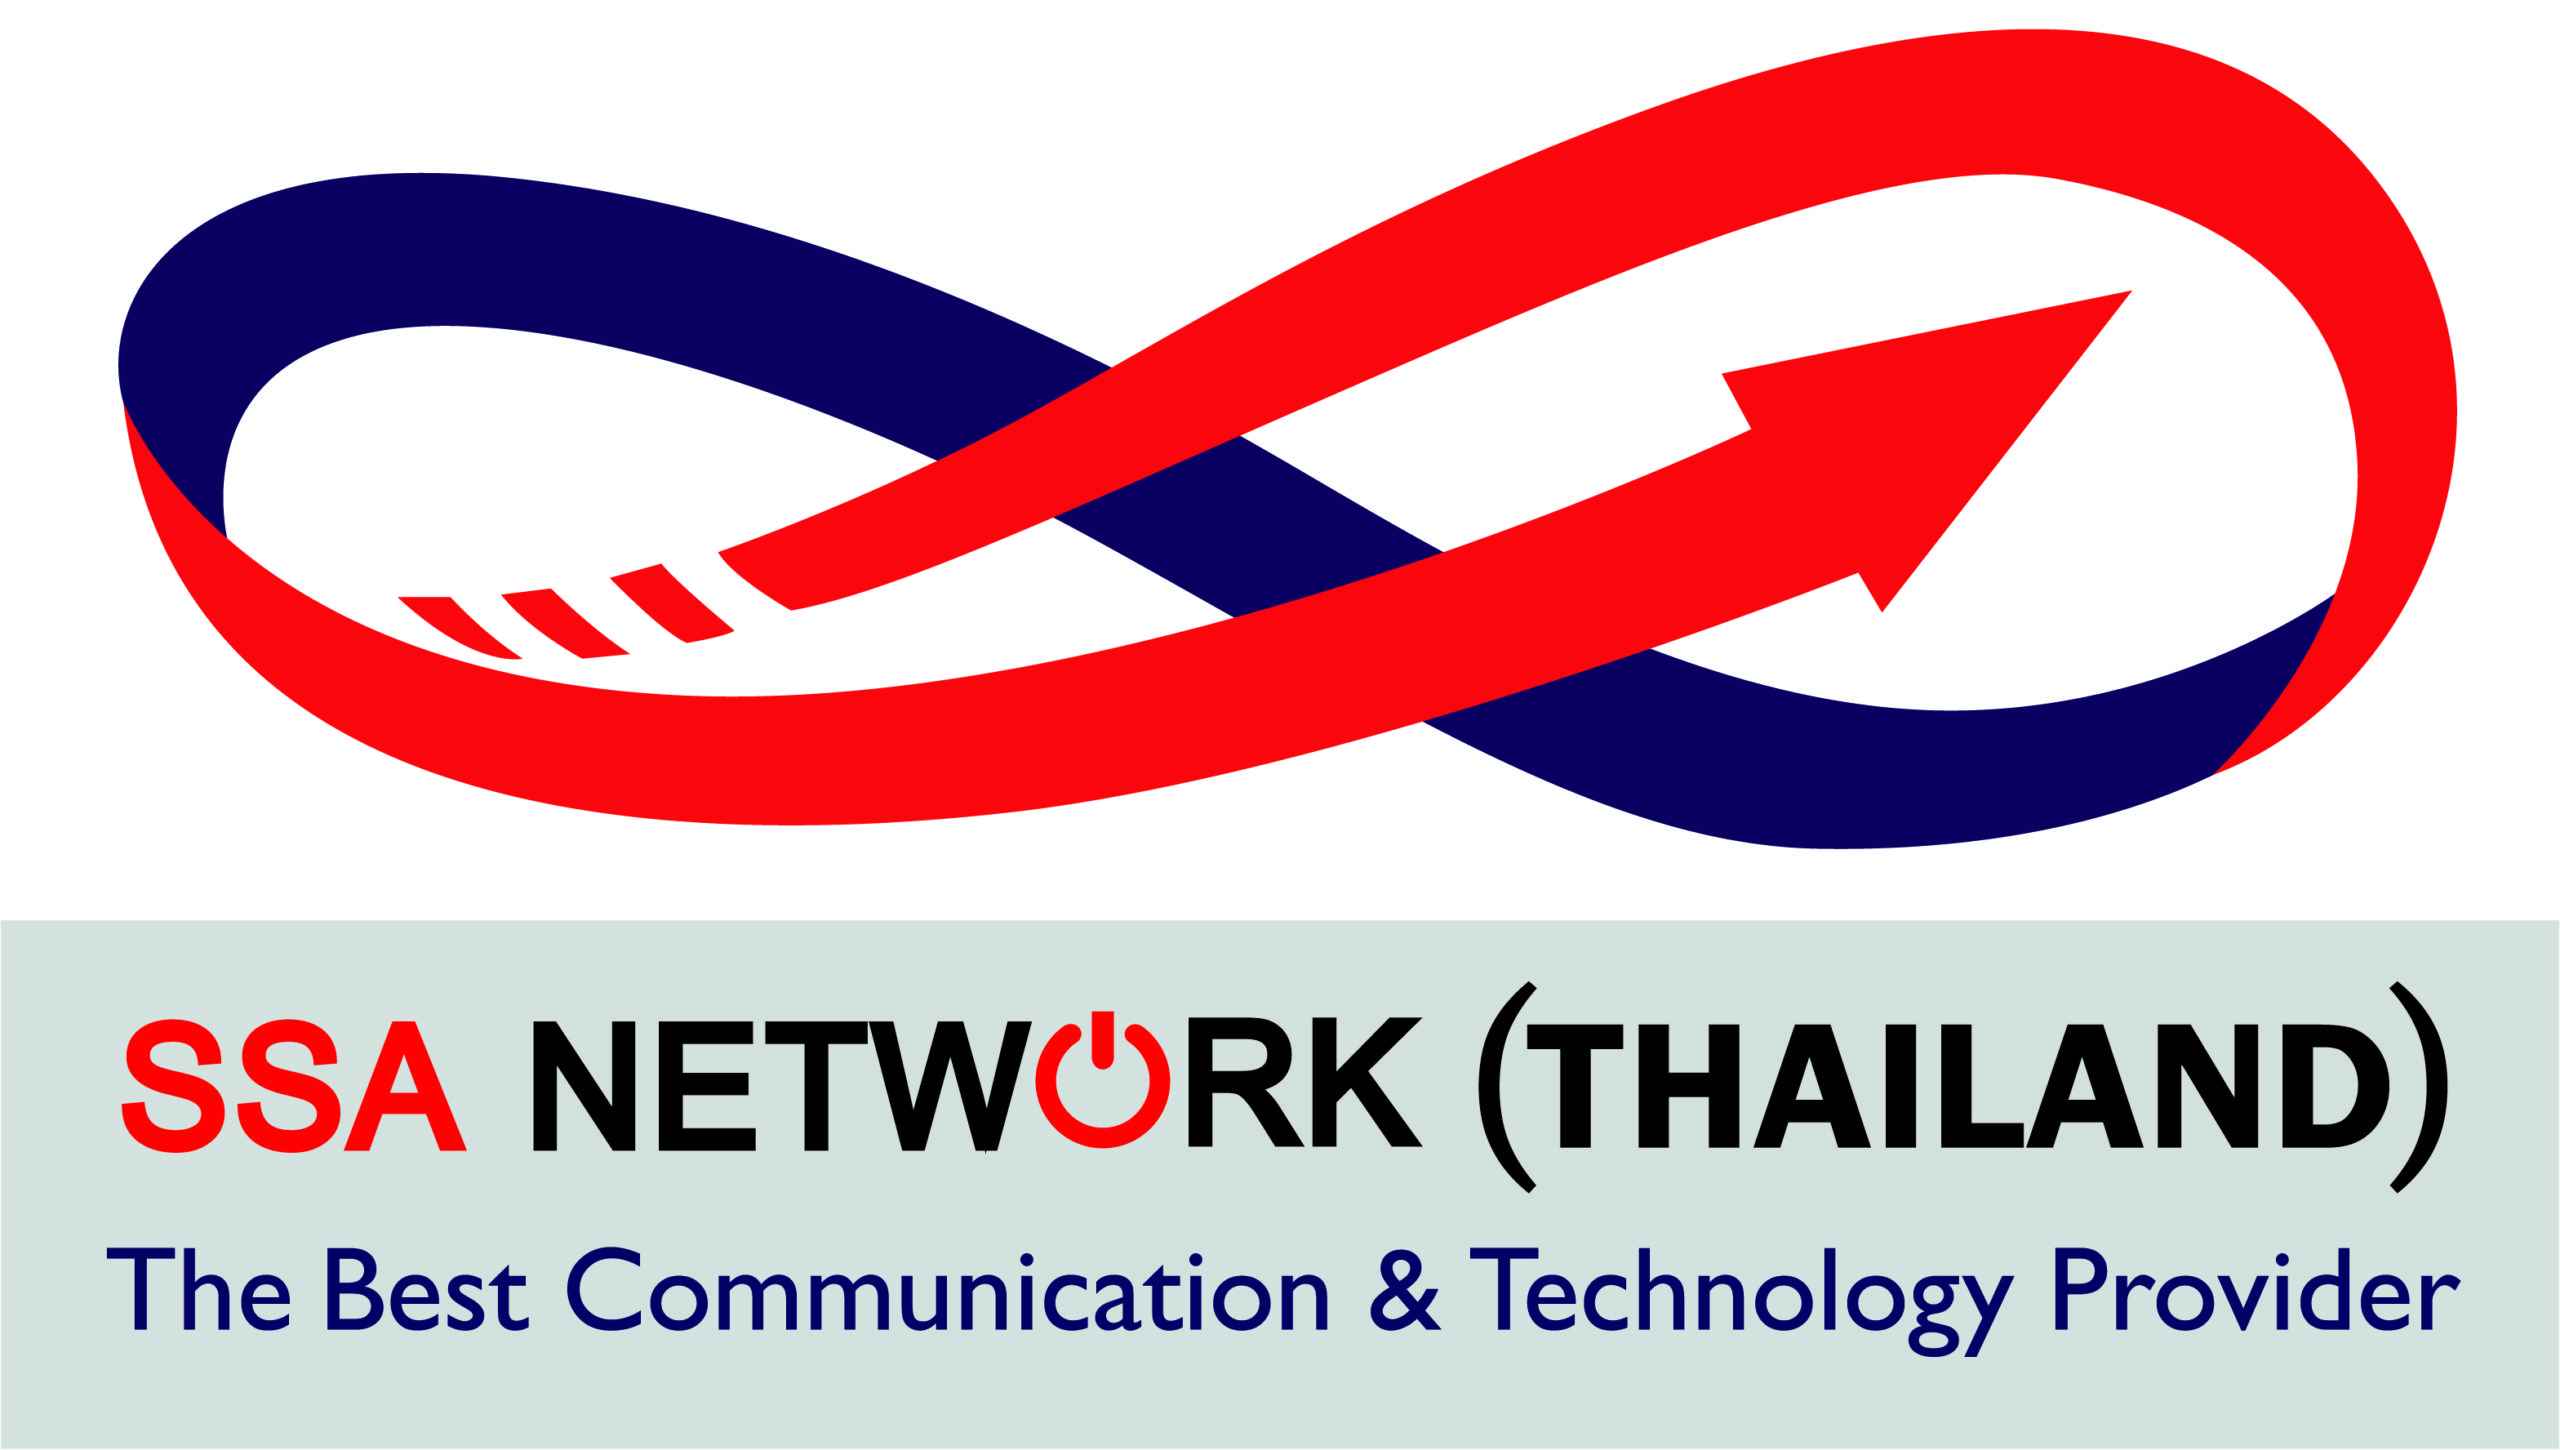 SSA Network Thailand